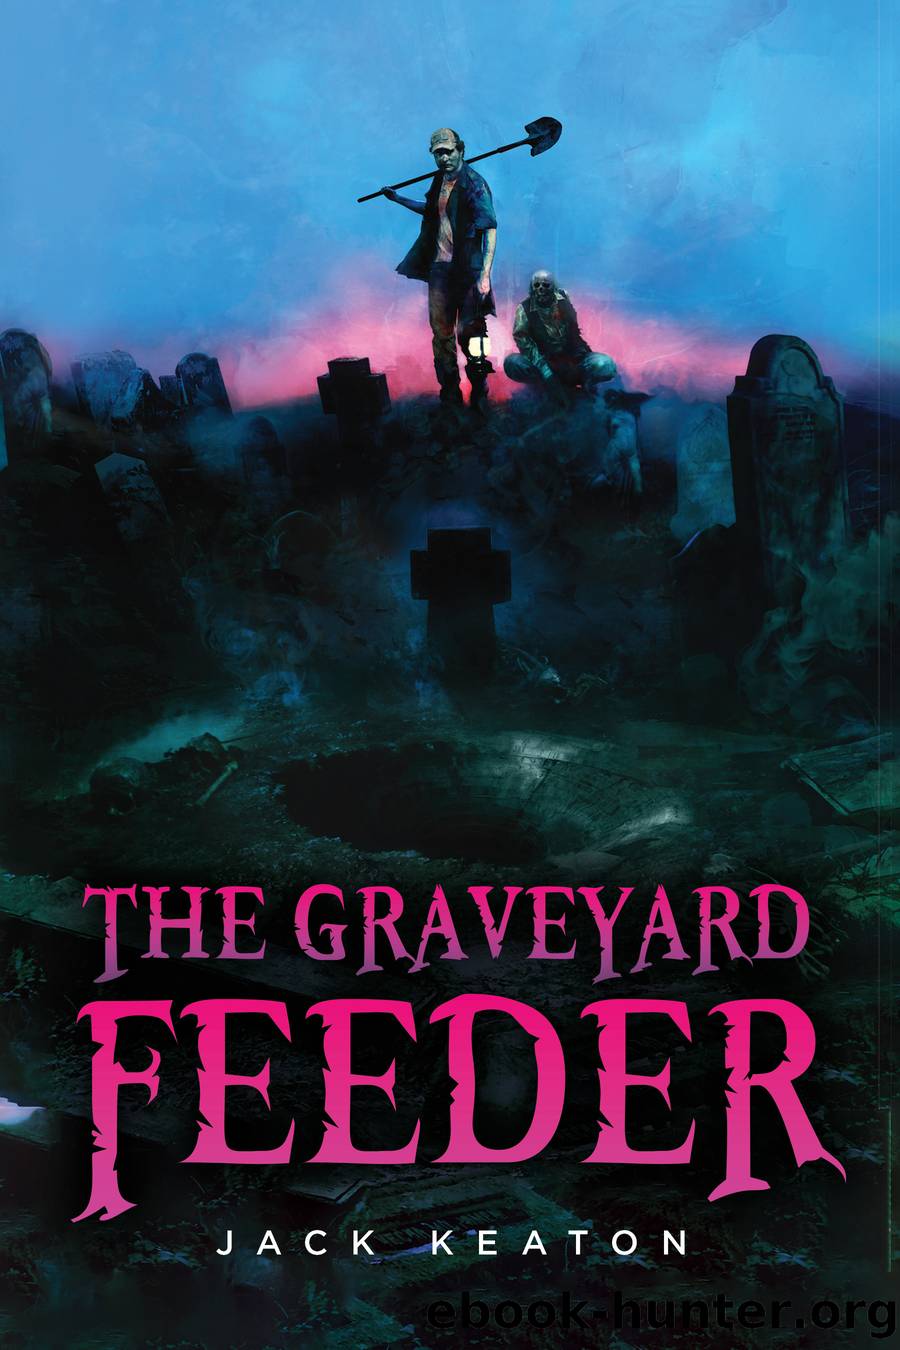 The Graveyard Feeder by Jack Keaton